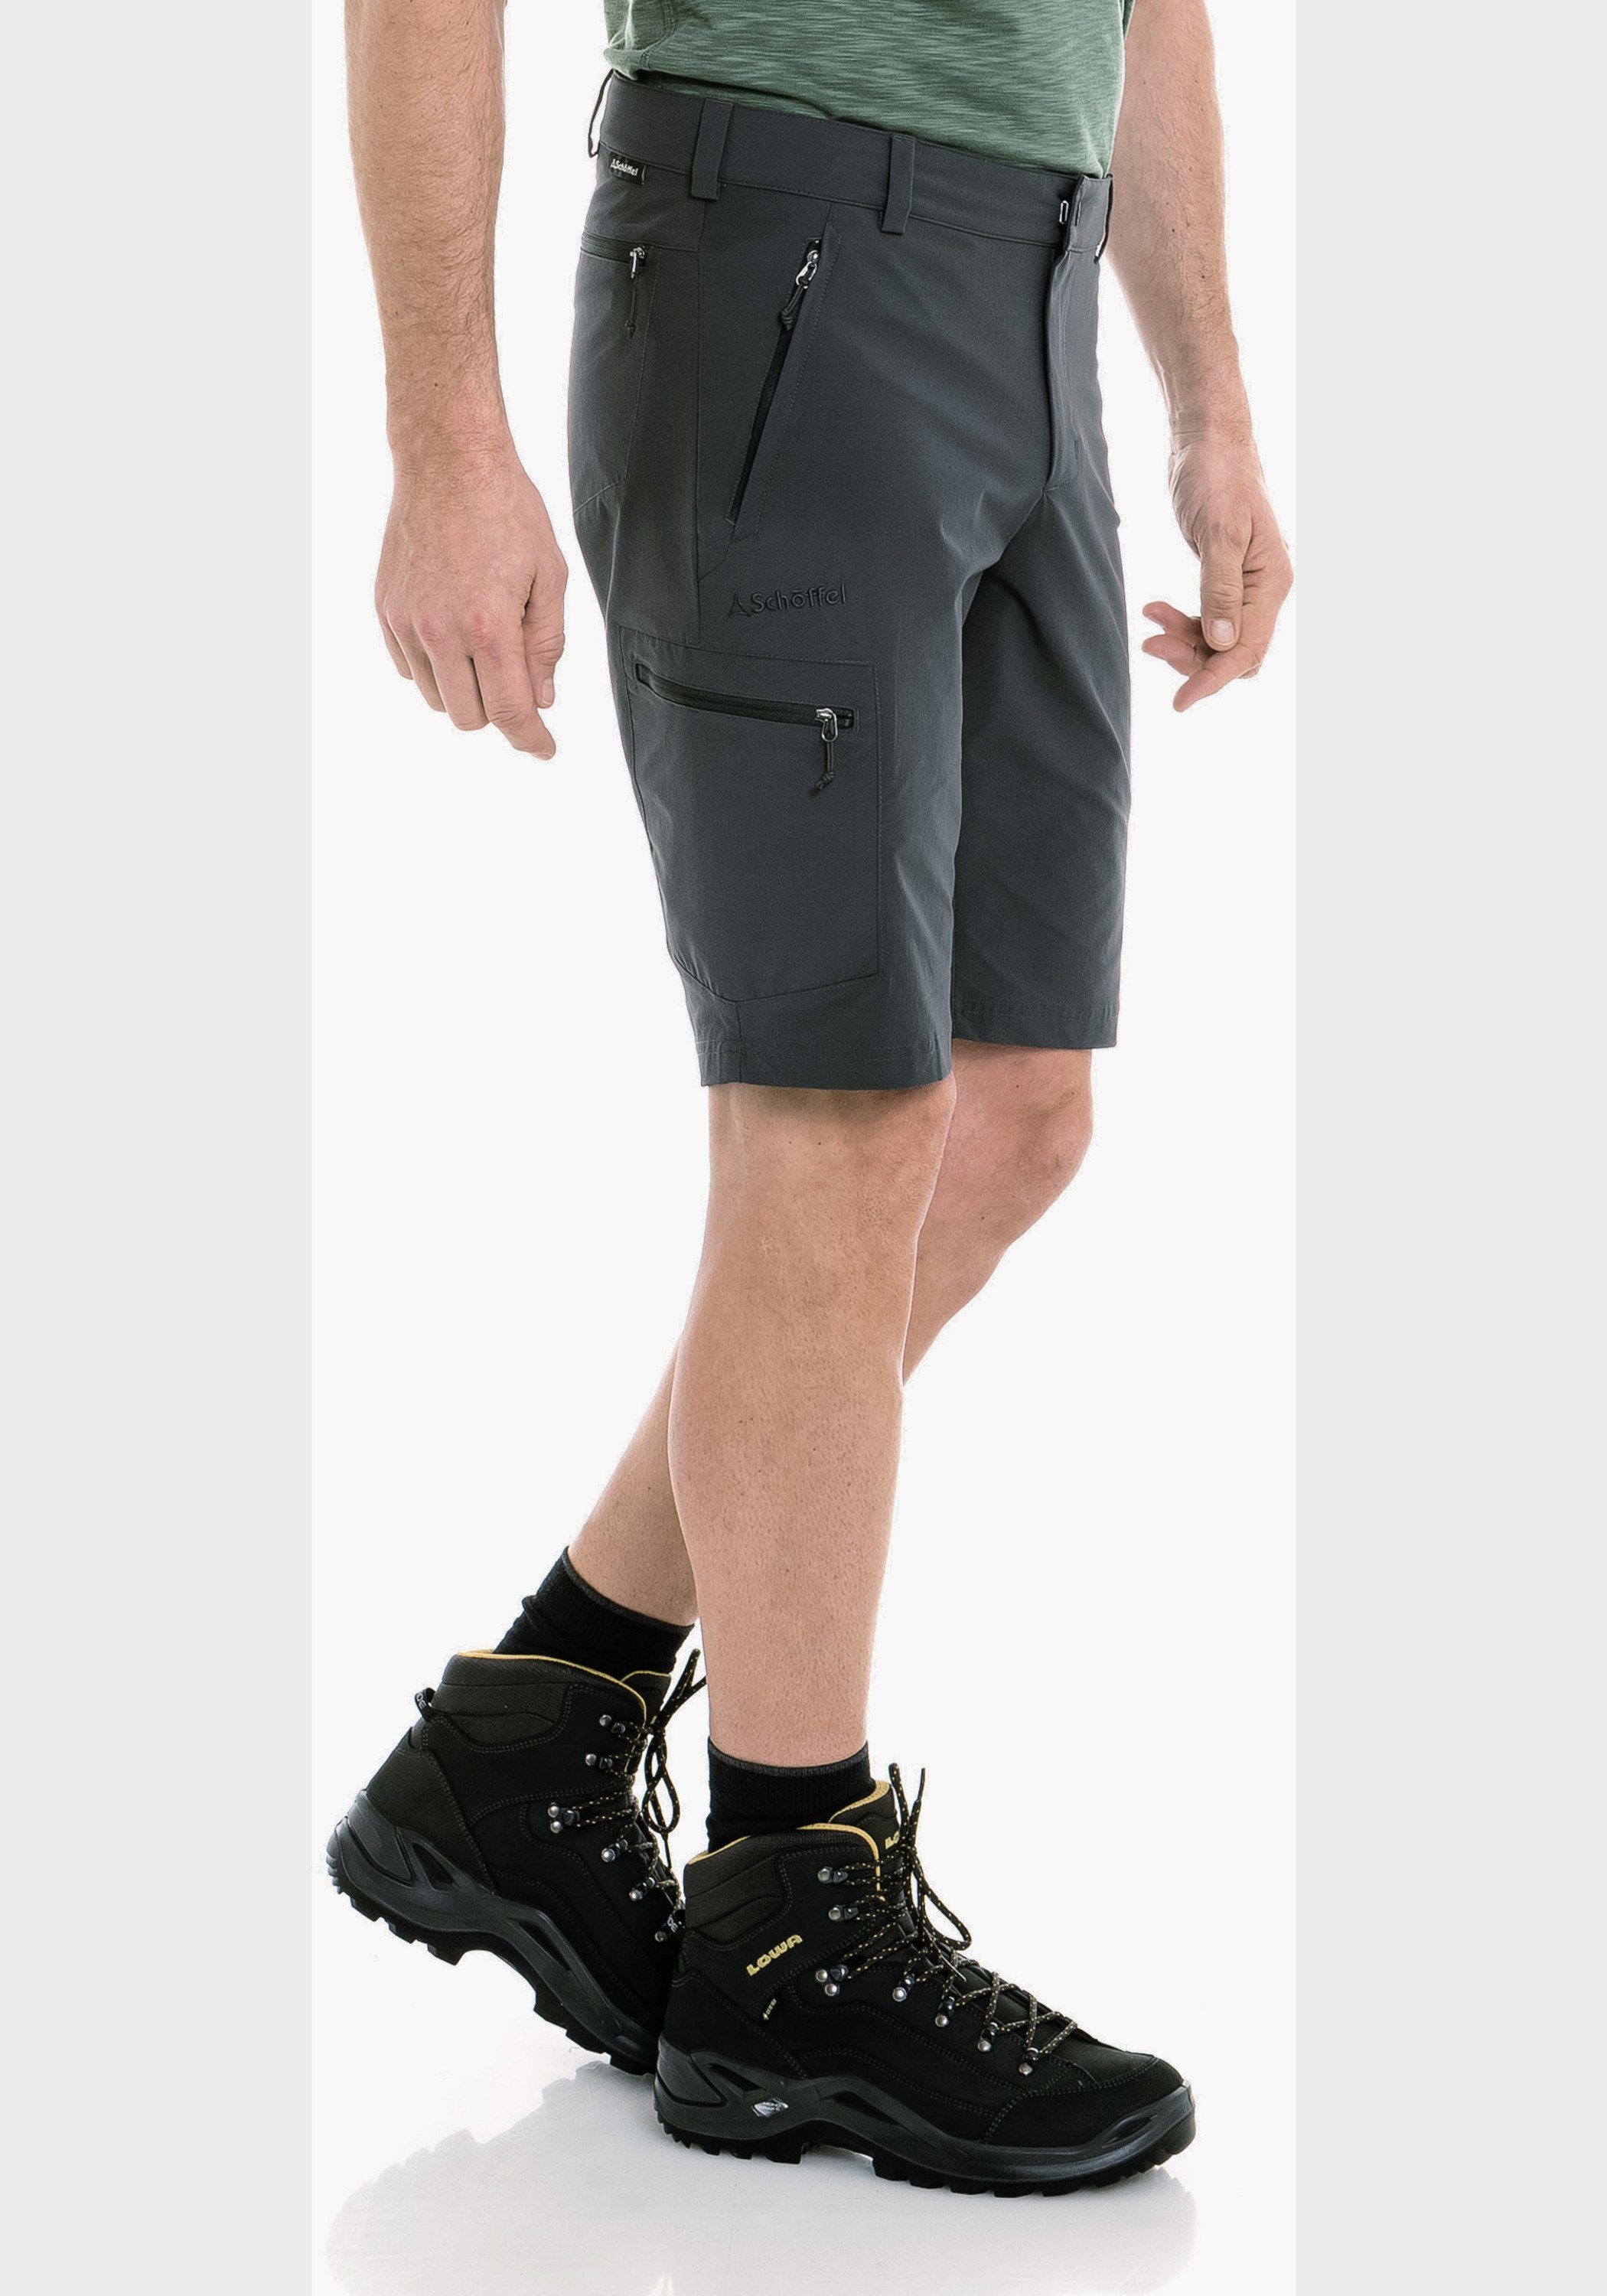 Bermudas grau Schöffel Folkstone Shorts